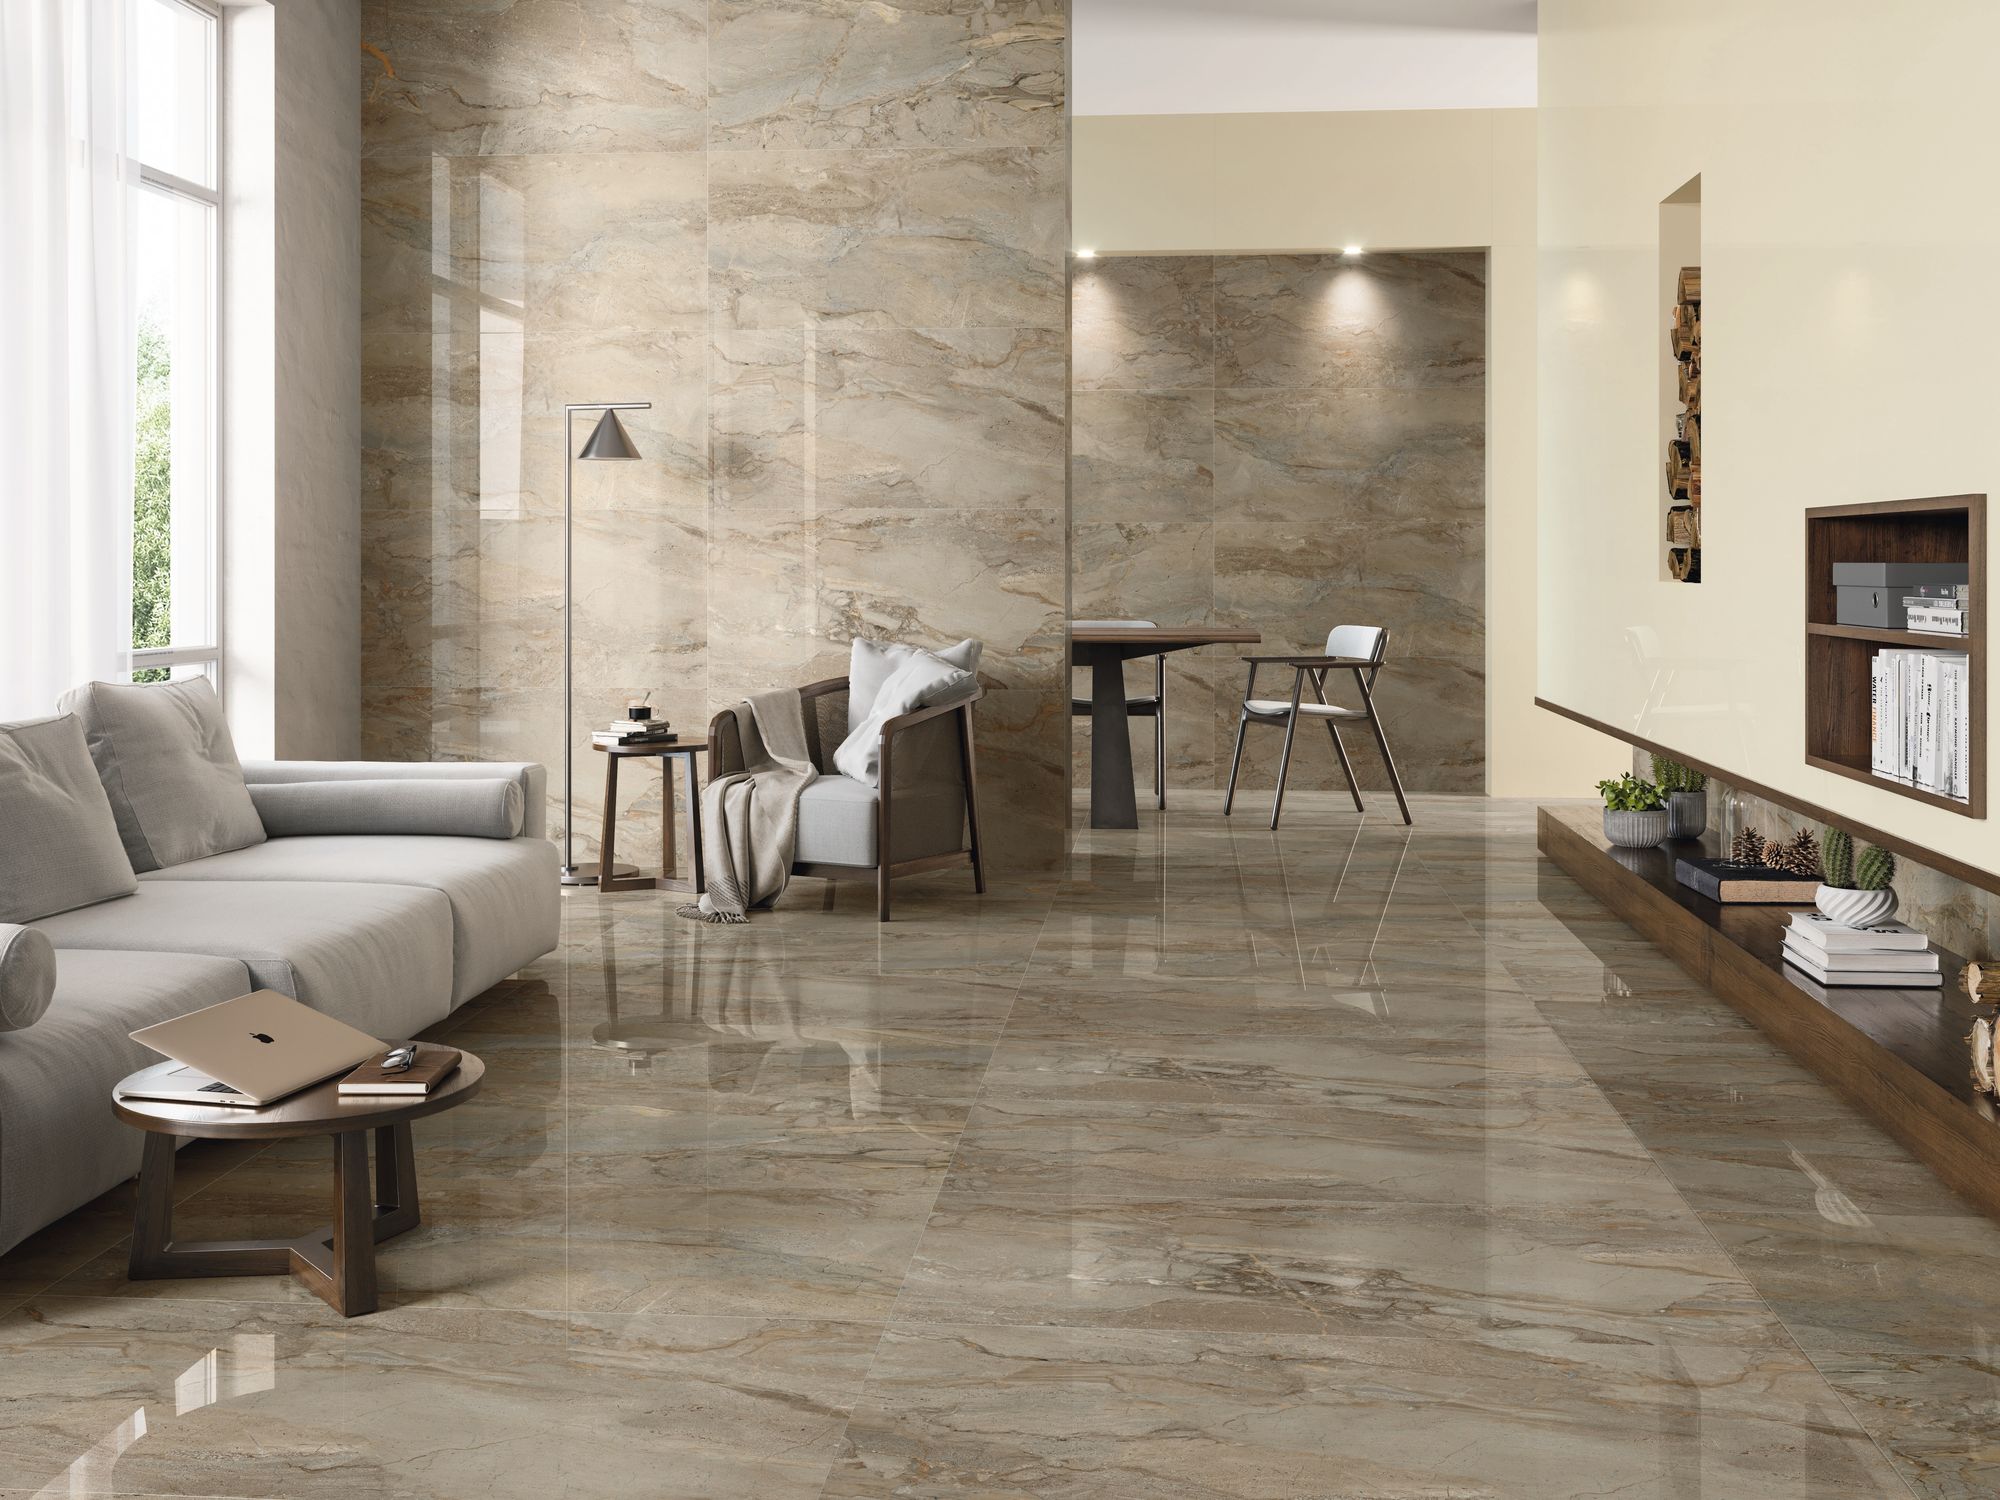 Carrelage marbre marron nuancé de beige 60x60 cm dans un salon moderne aux murs crème et mobilier gris et bois, luminosité naturelle